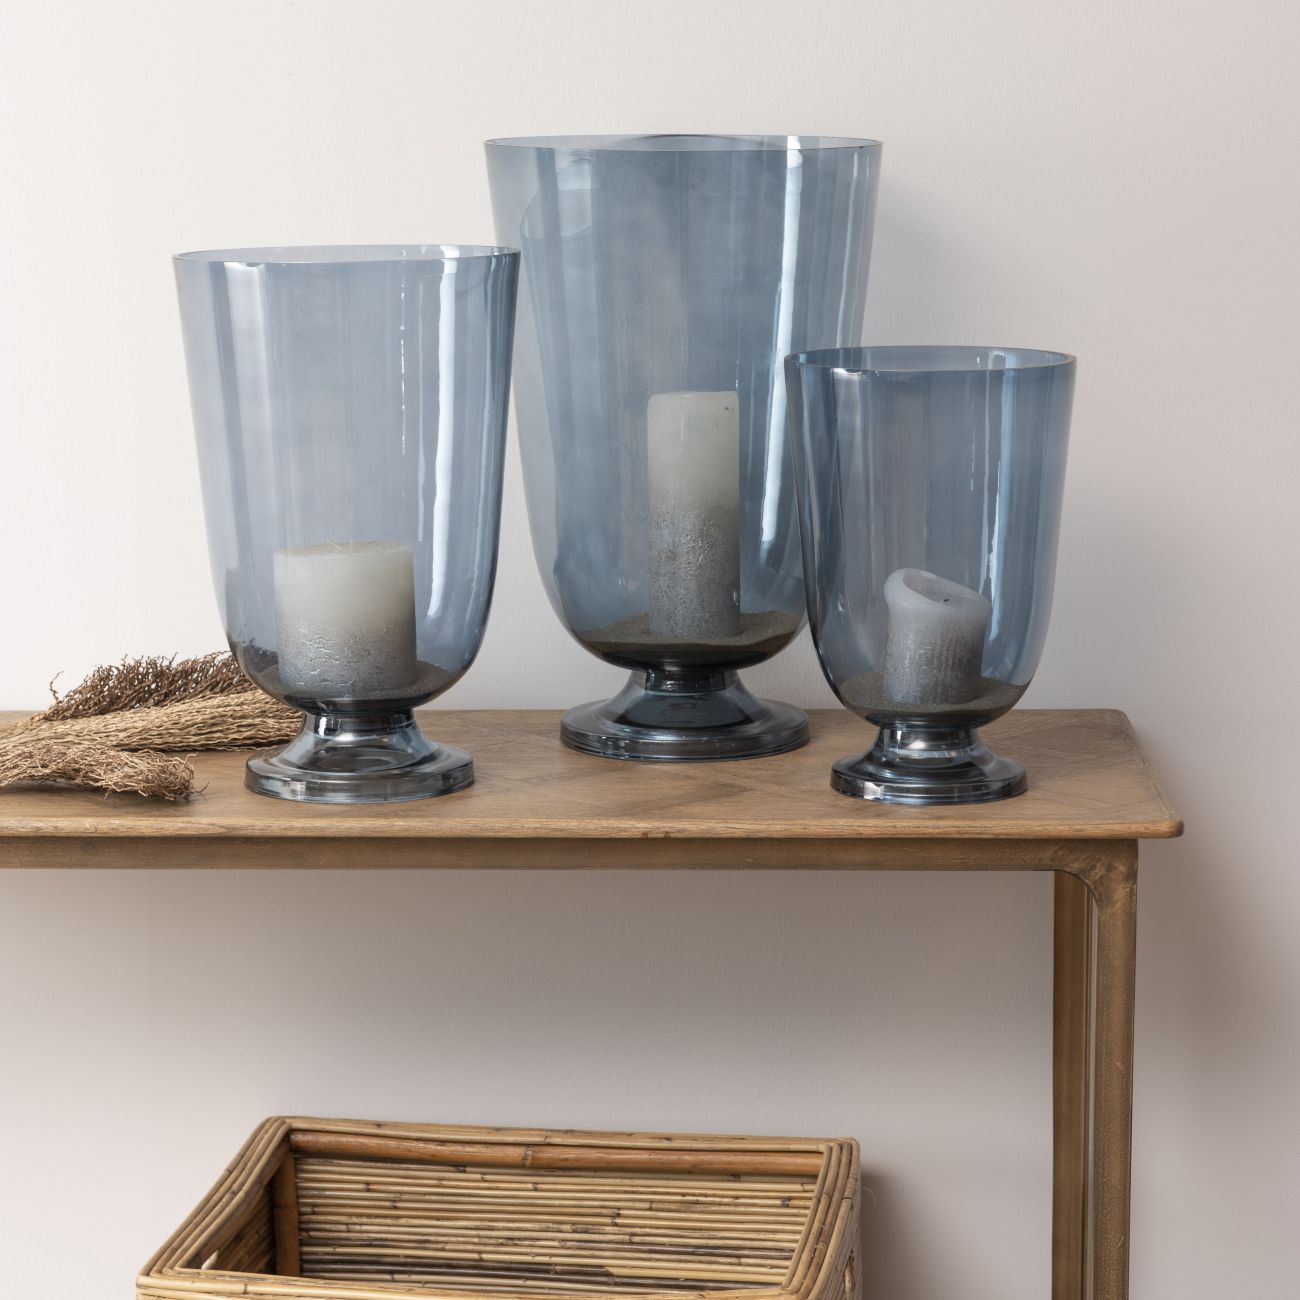 Blue Hurricane Vases